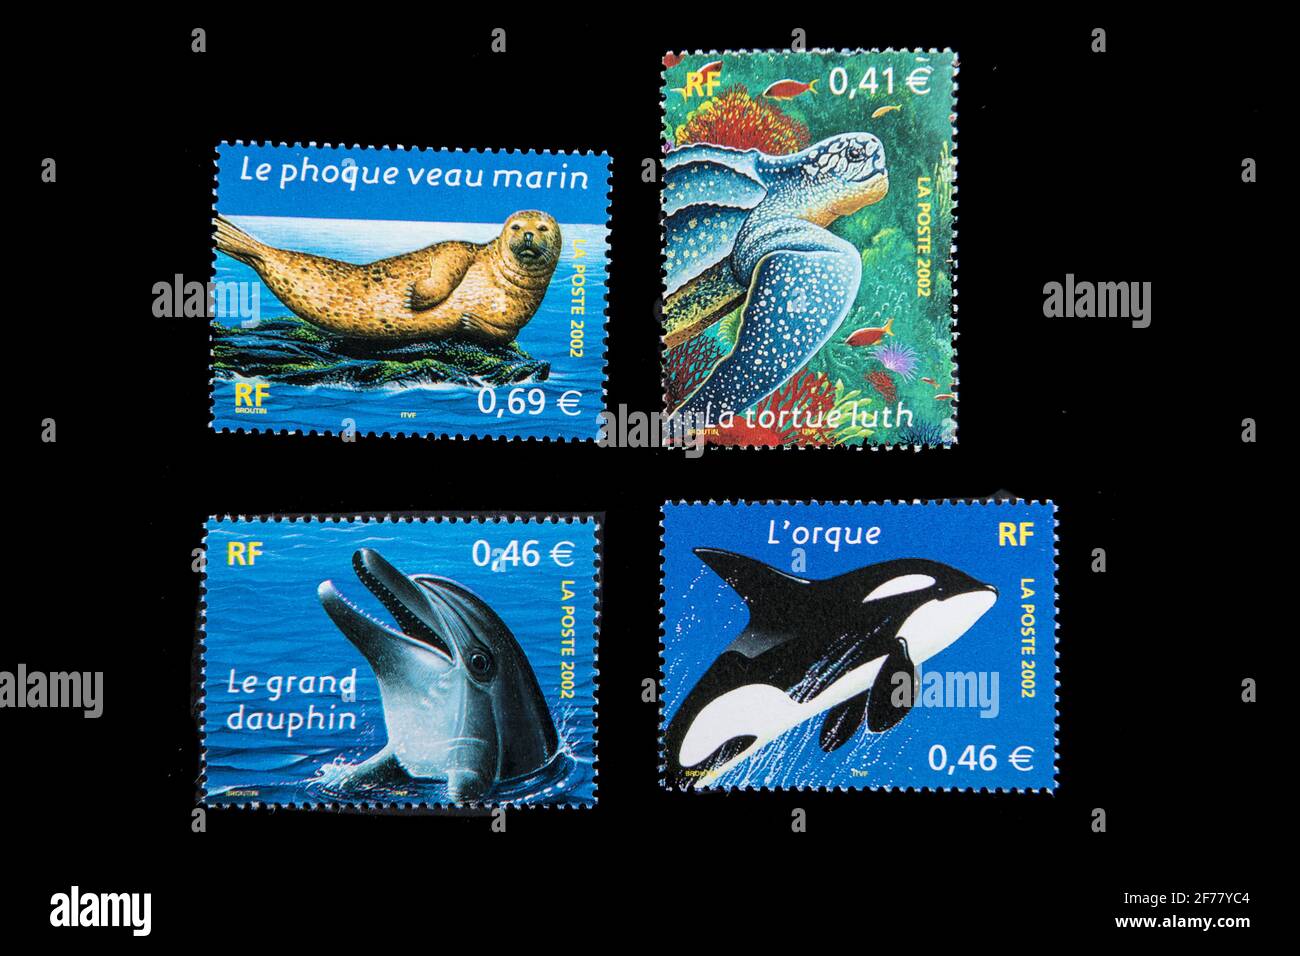 France, Paris, timbres, faune marine Banque D'Images